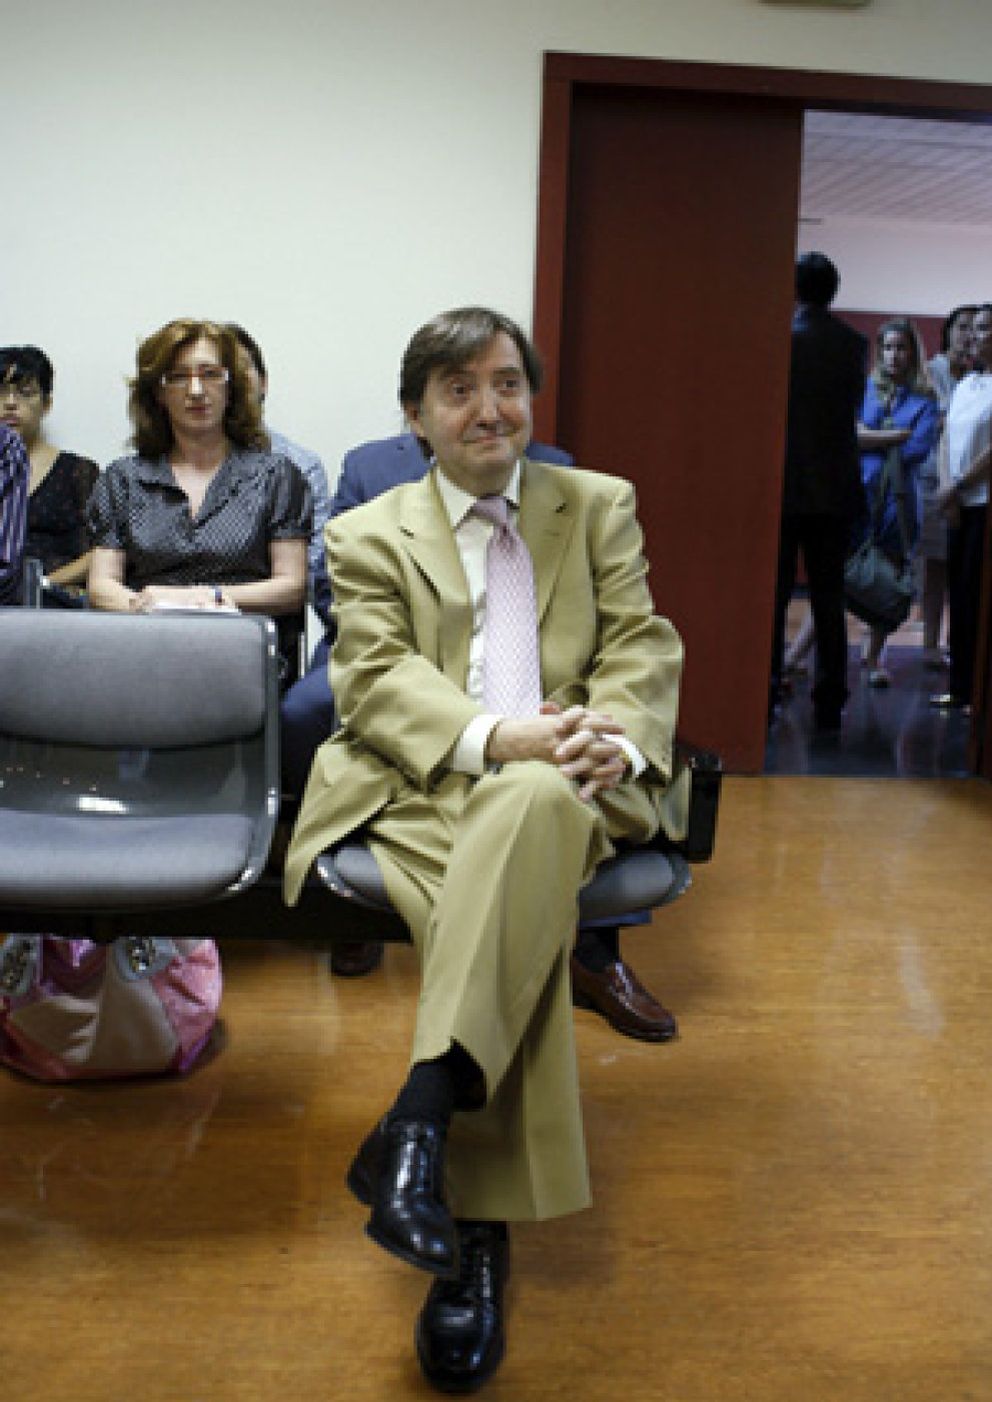 Foto: El juez condena a Jiménez Losantos a indemnizar con 100.000 euros a Zarzalejos por los insultos vertidos contra él